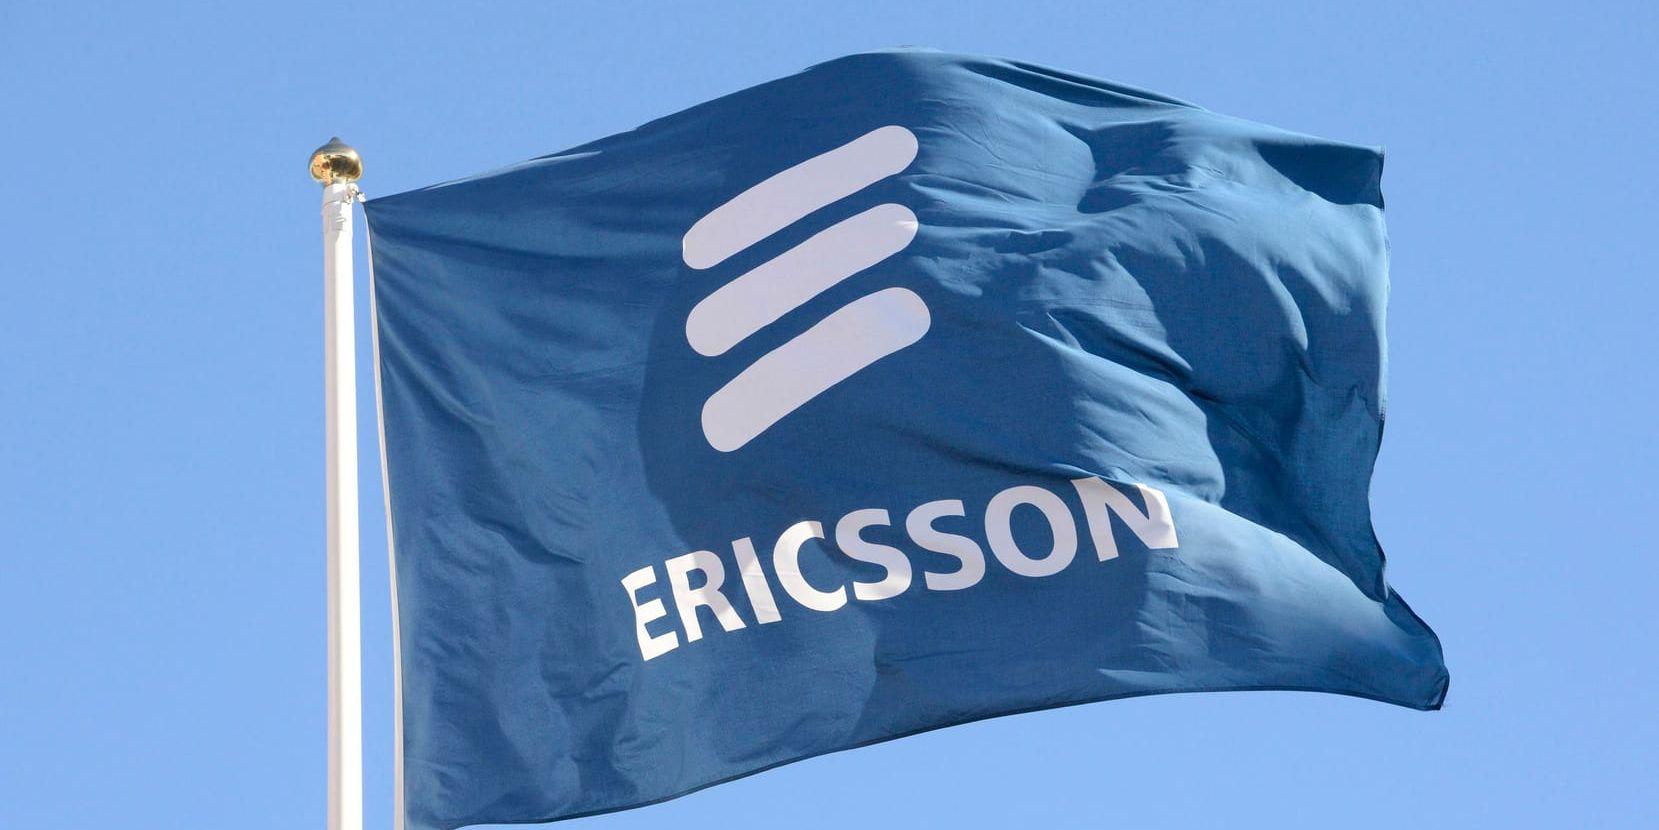 Vart är Ericsson på väg? På fredag 20 oktober får vi veta mer. Arkivbild.